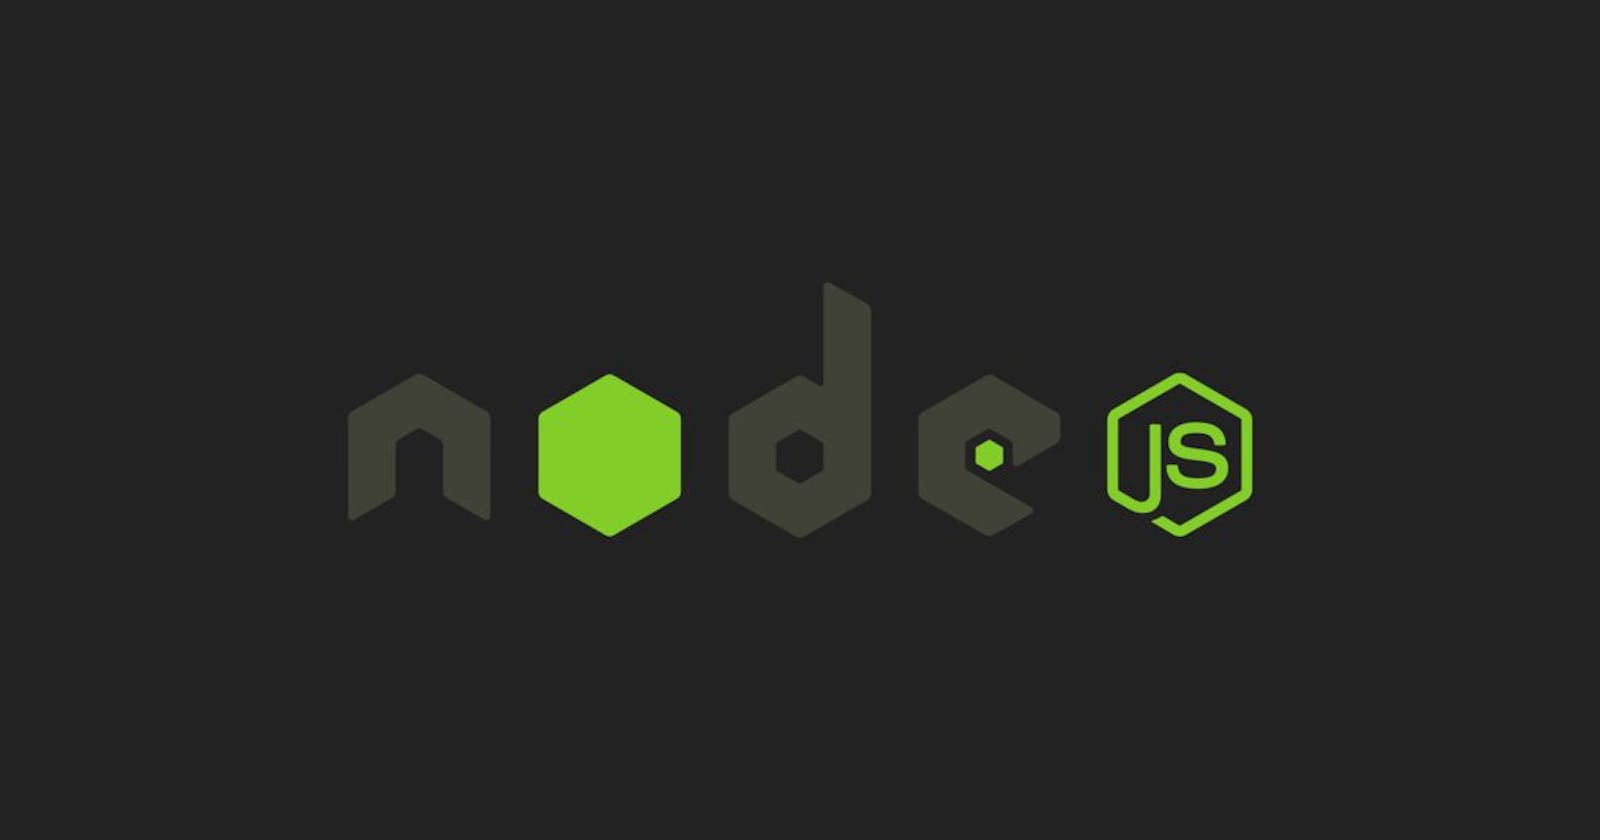 Como organizar e estruturar projetos  com node.js?